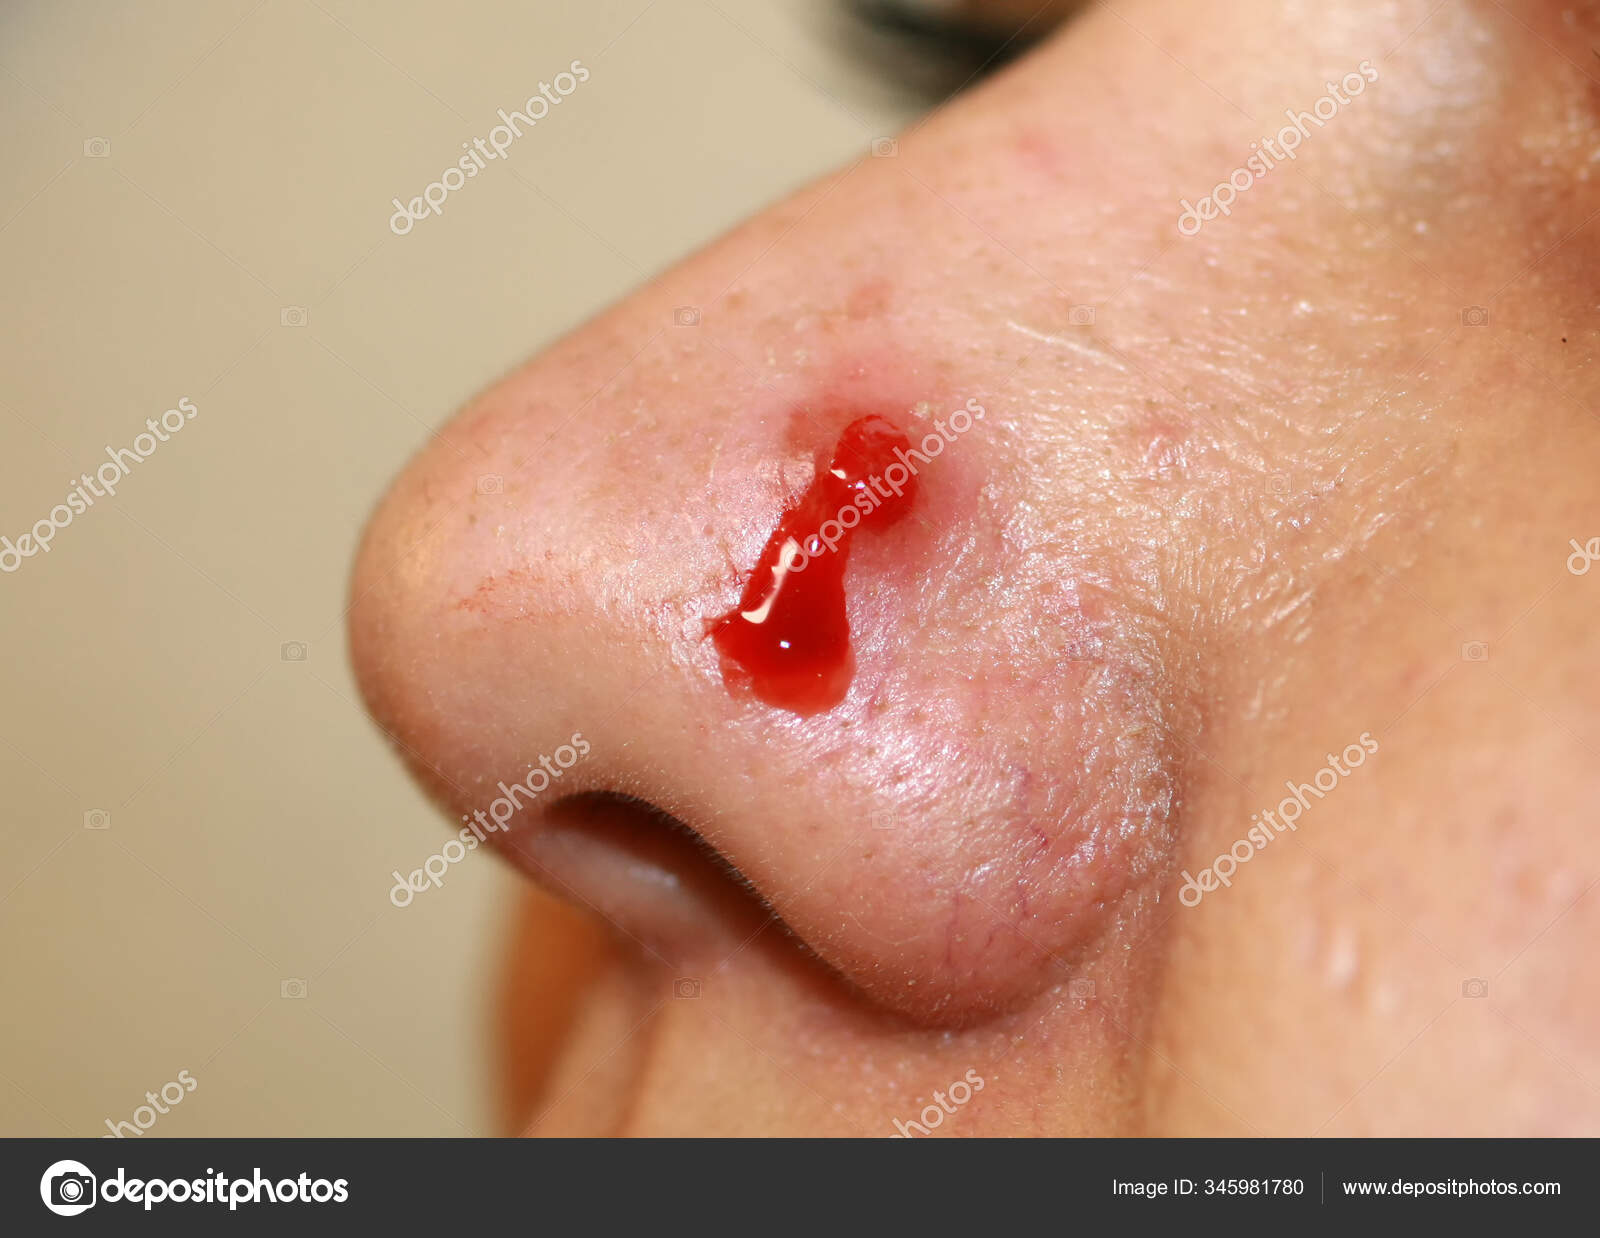 Bouton enflammé sur le nez. Acné kystique. L'acné sur la peau ...